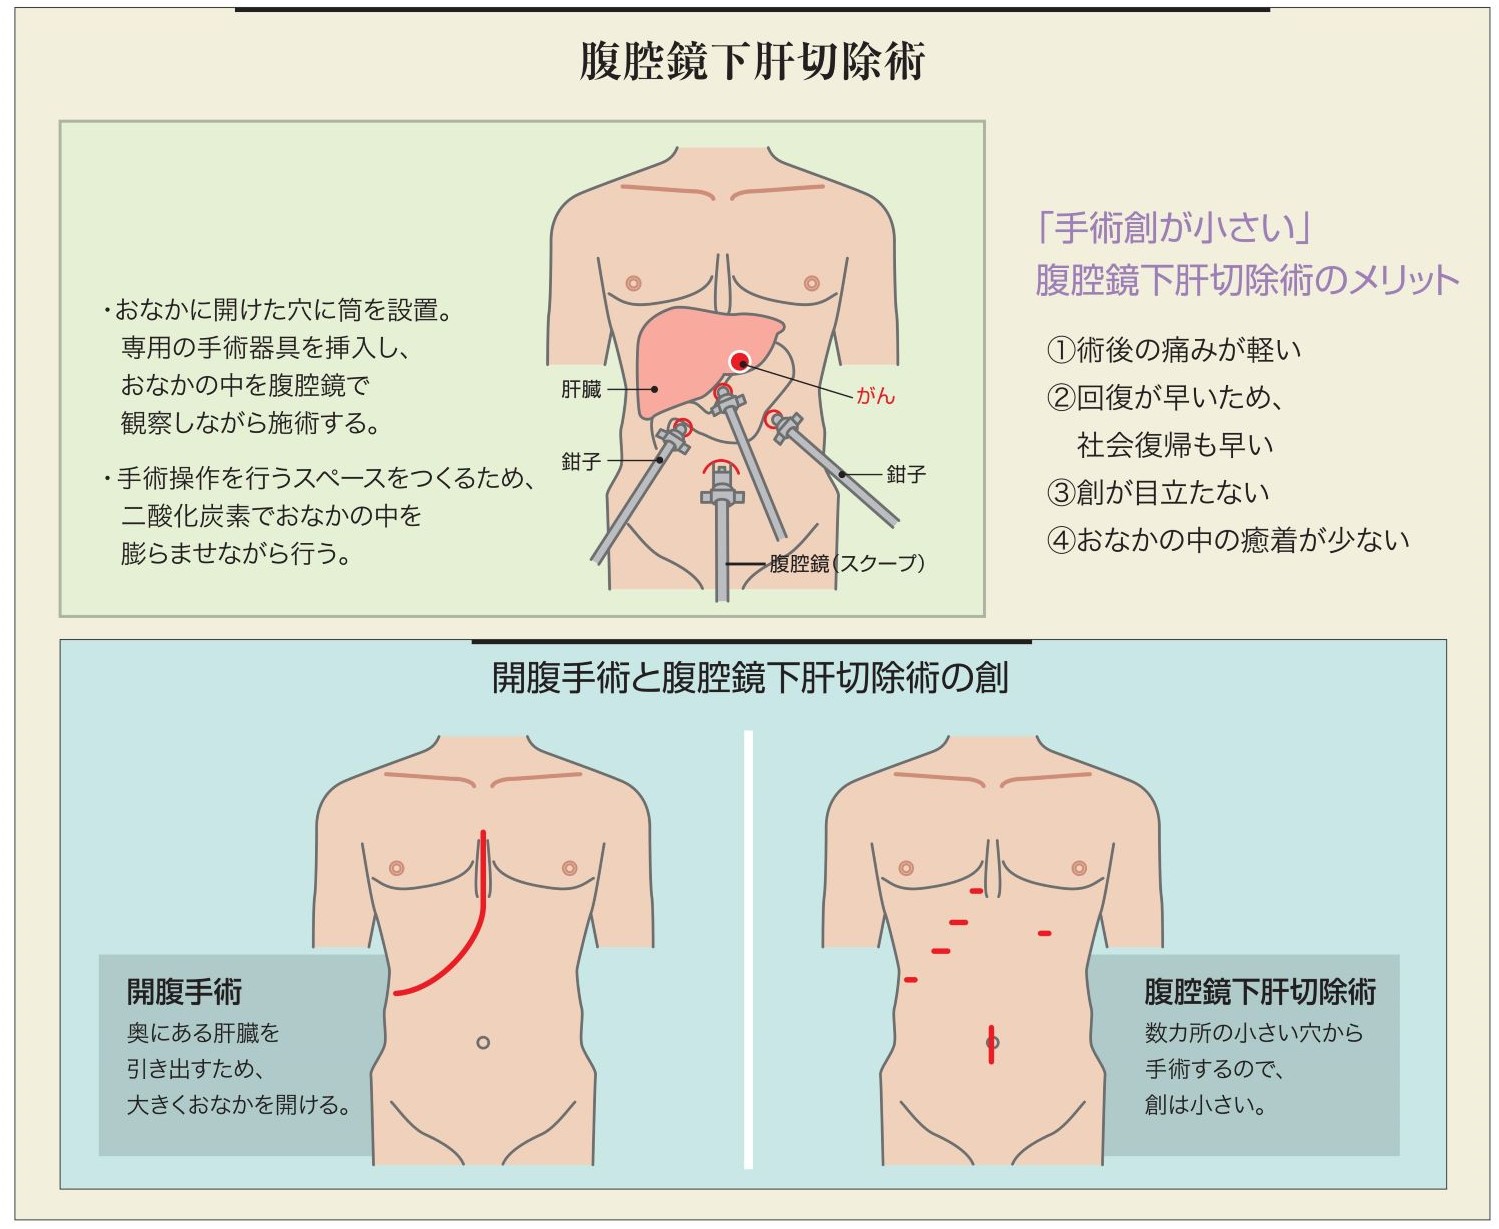 腹腔鏡下肝切除術 | トピックス | 磐田市立総合病院 - Iwata city Hospital